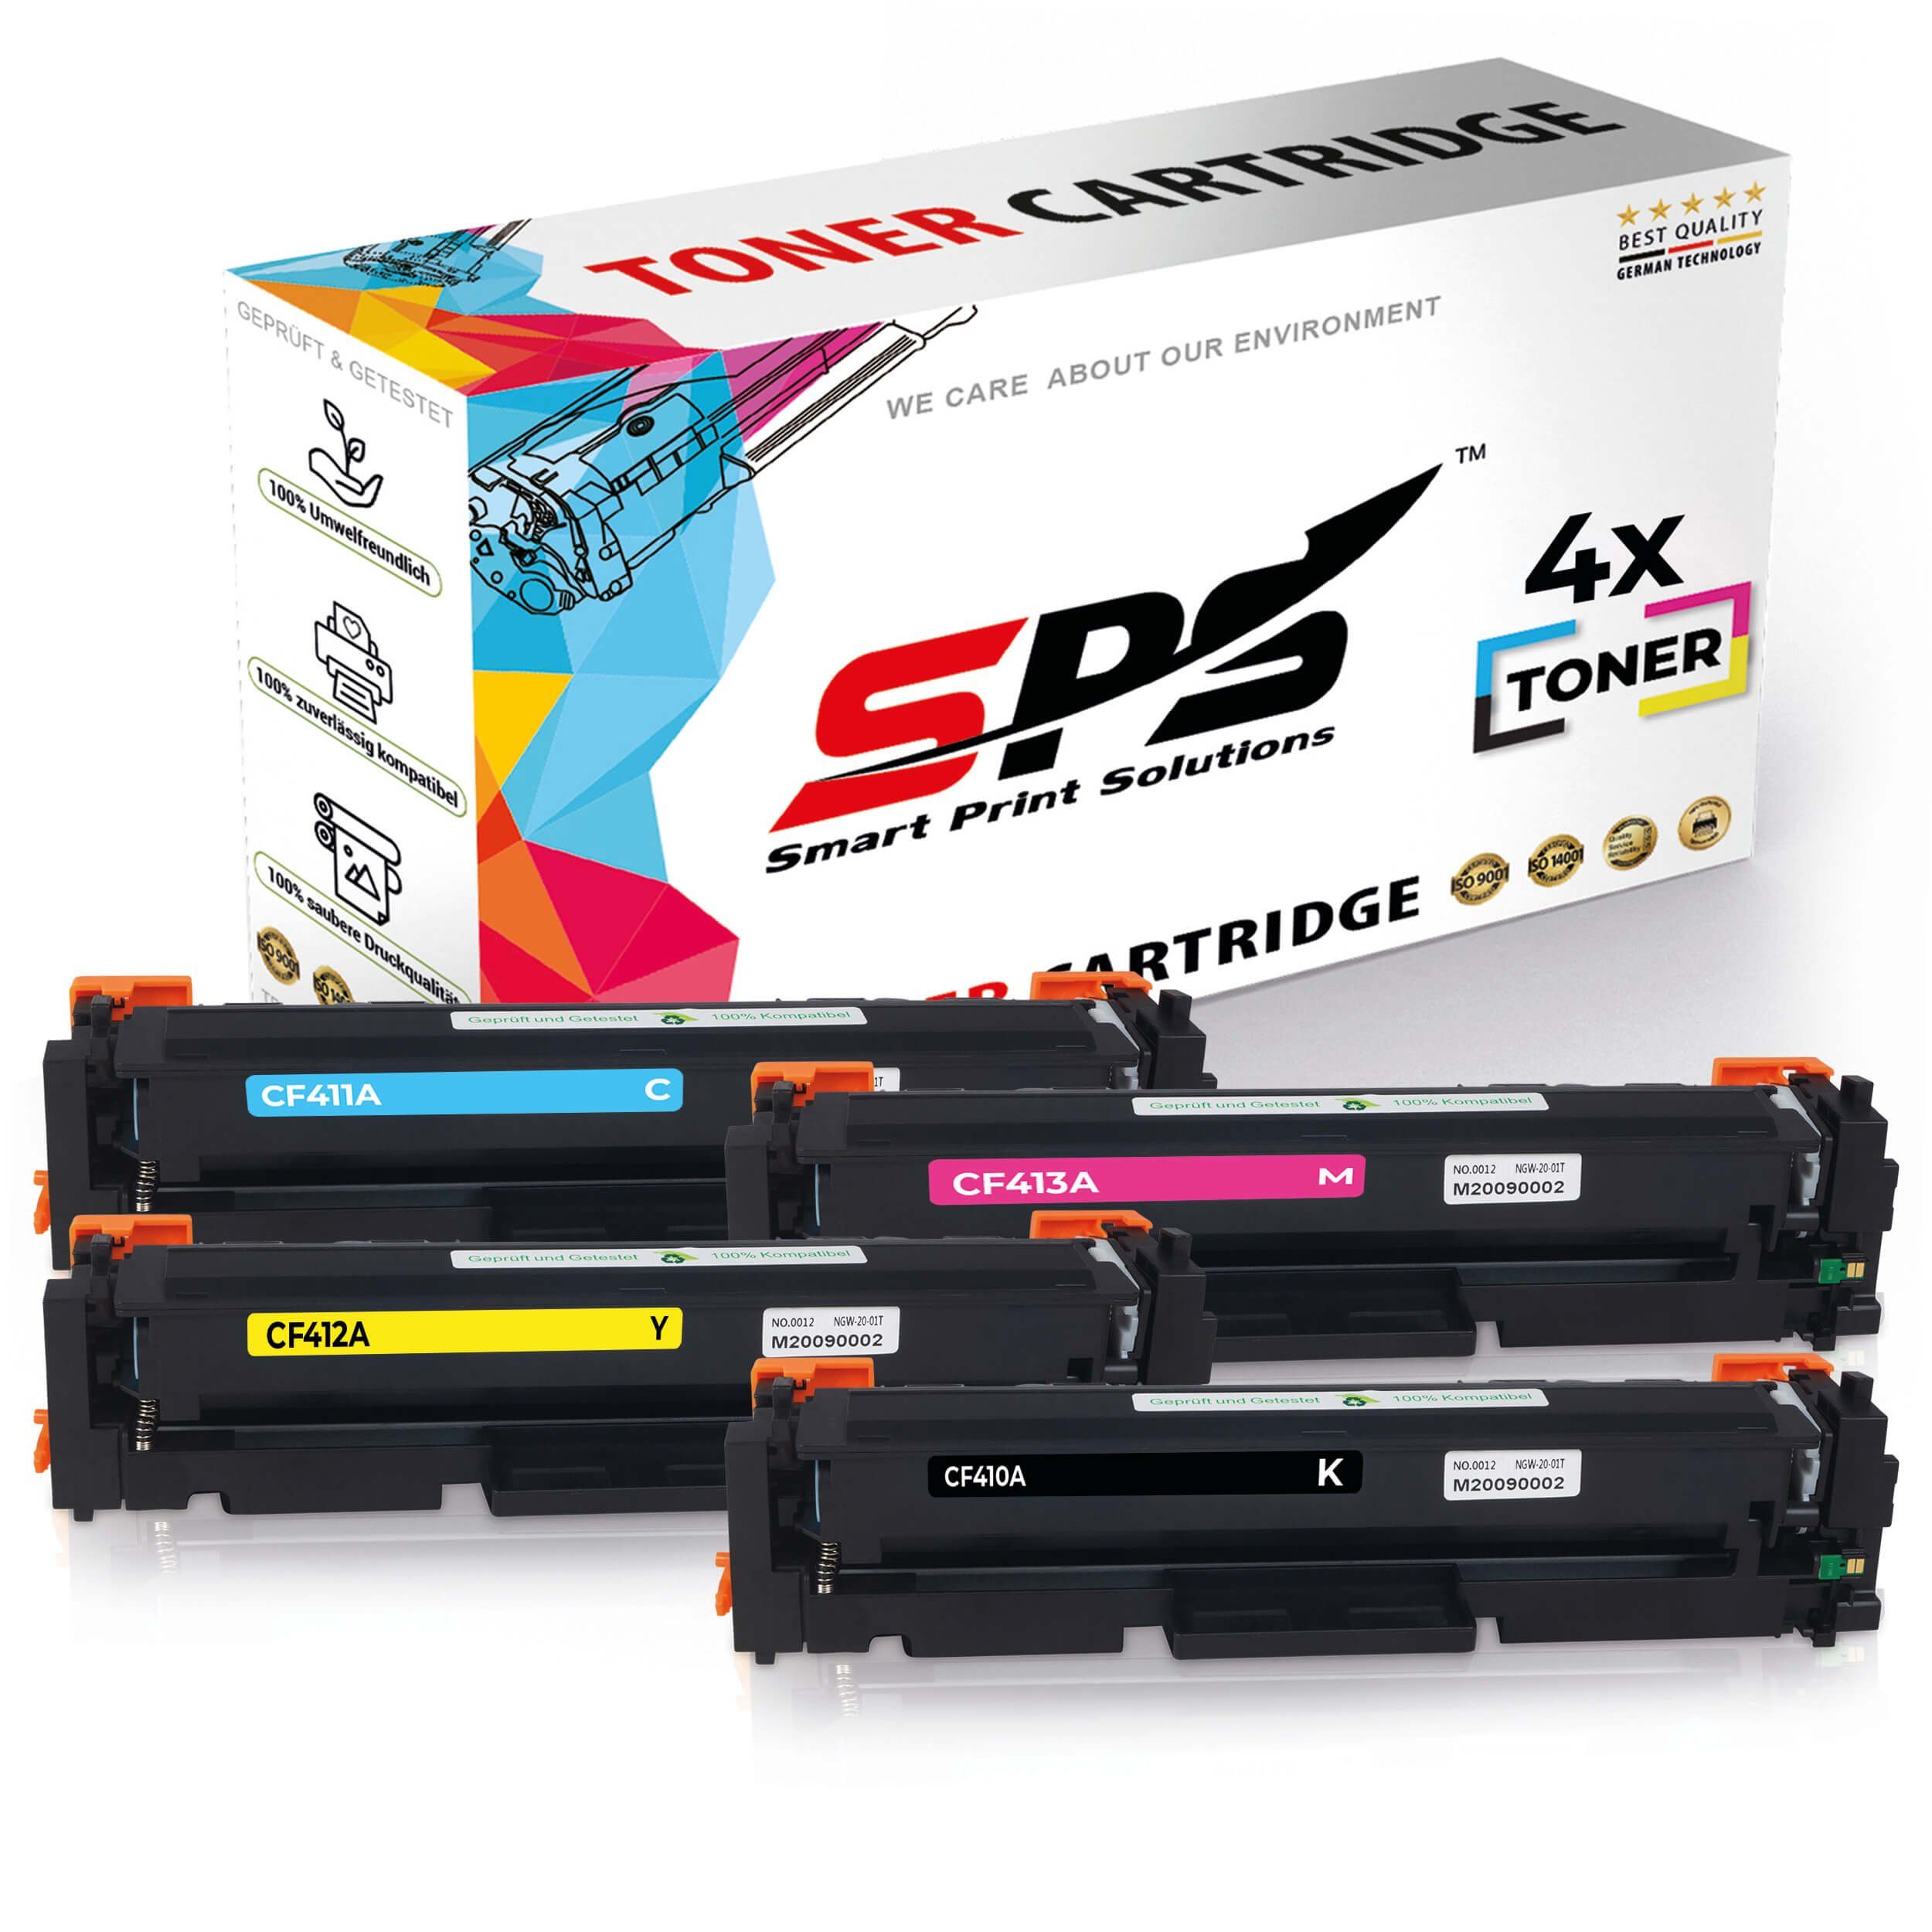 SPS Tonerkartusche 4x Multipack Set Kompatibel für HP Color LaserJet, (4er Pack, 4x Toner)